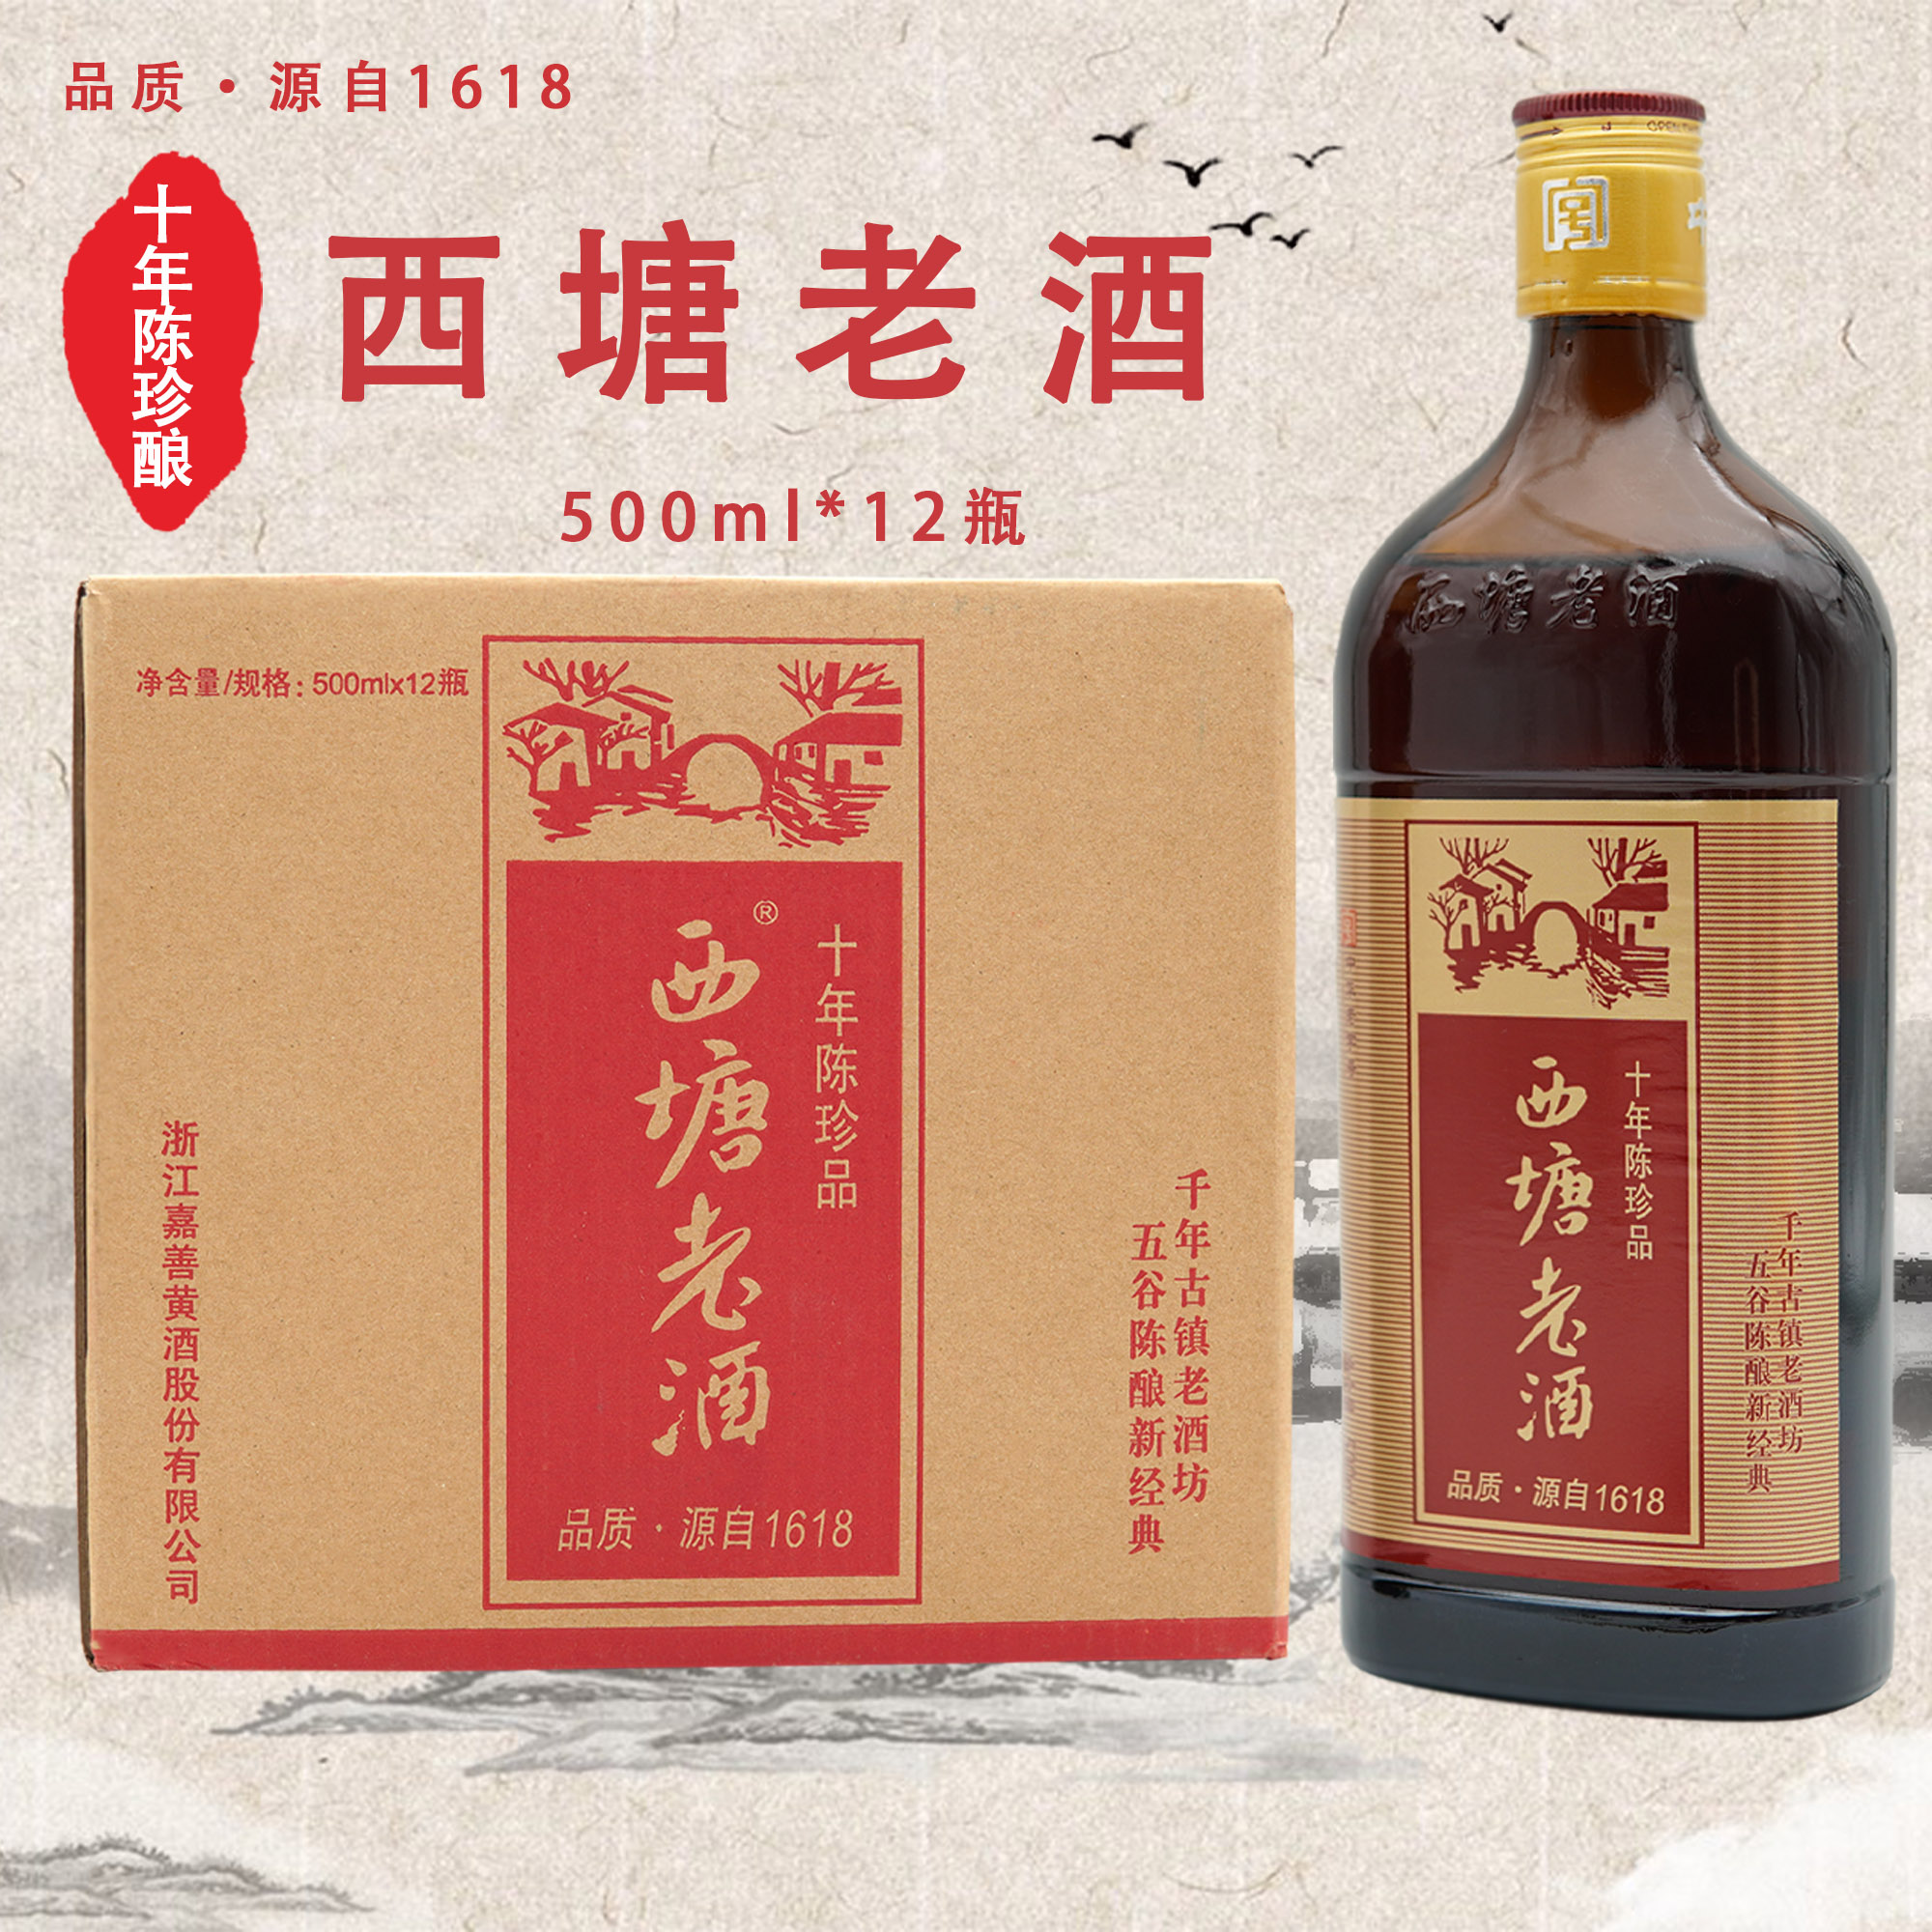 西塘1618十年陈珍品扁瓶半干型西塘老酒红标500ml 12瓶送礼佳品